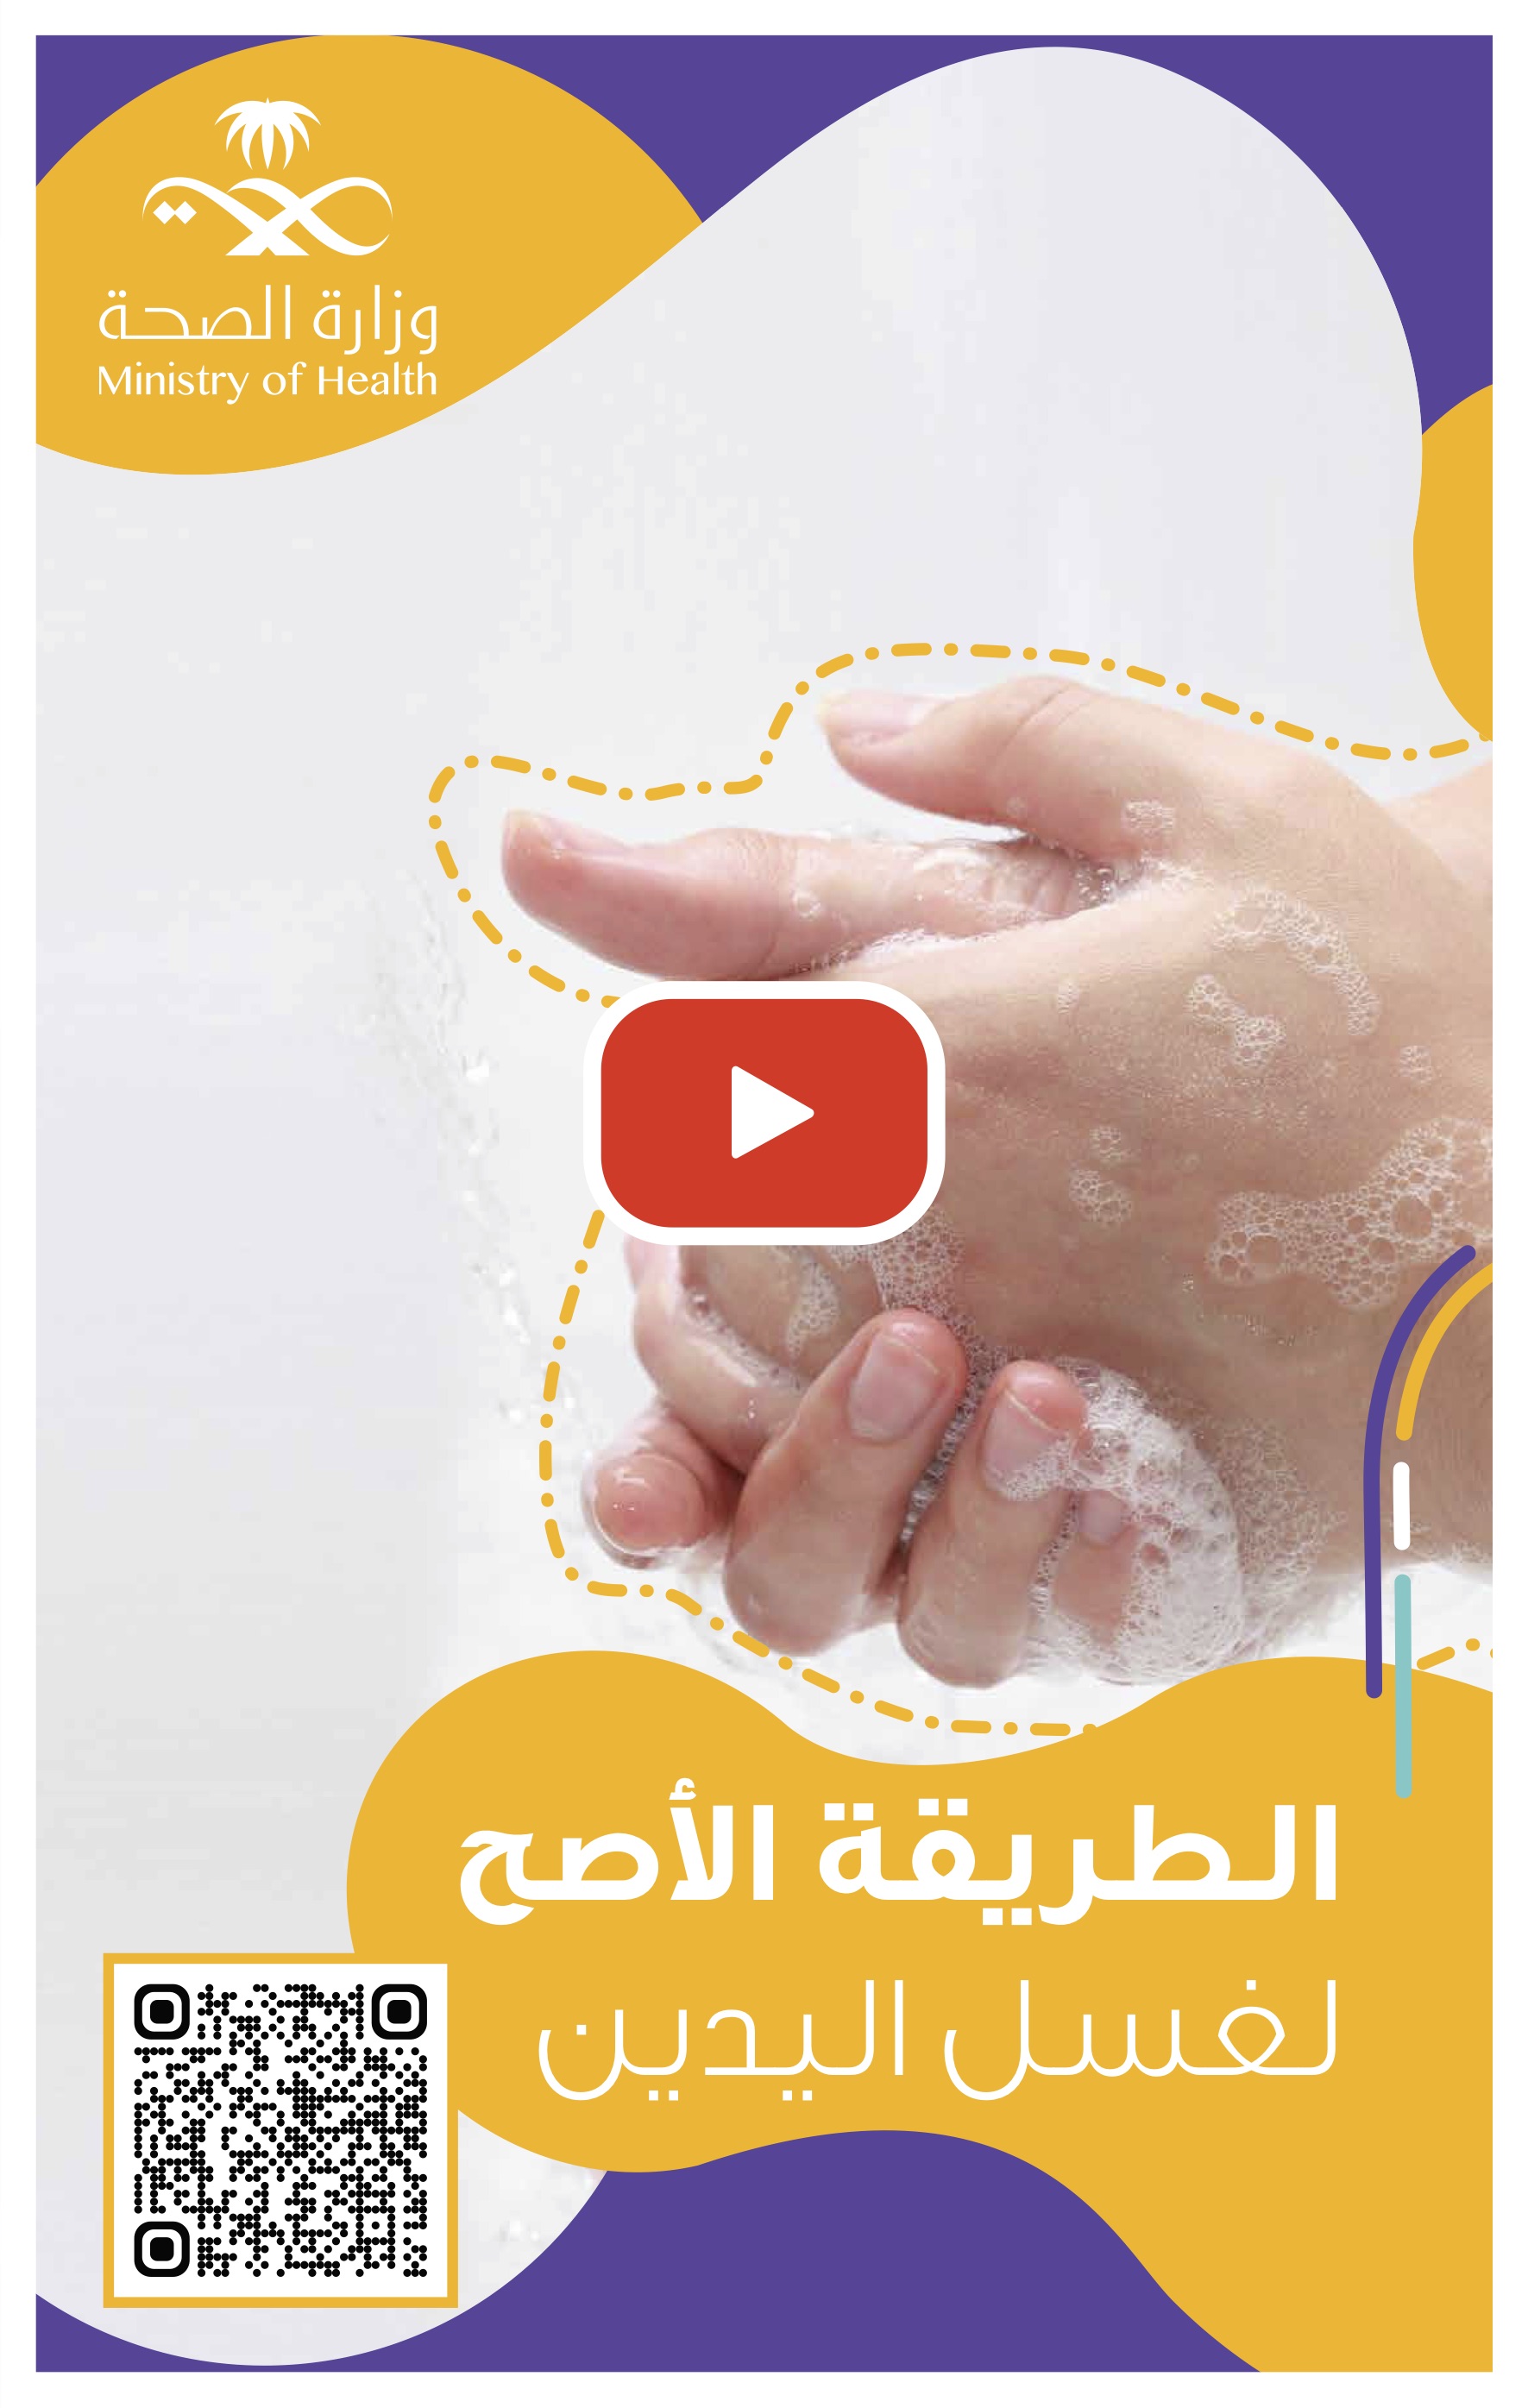 الطريقة الأصح لغسل اليدين